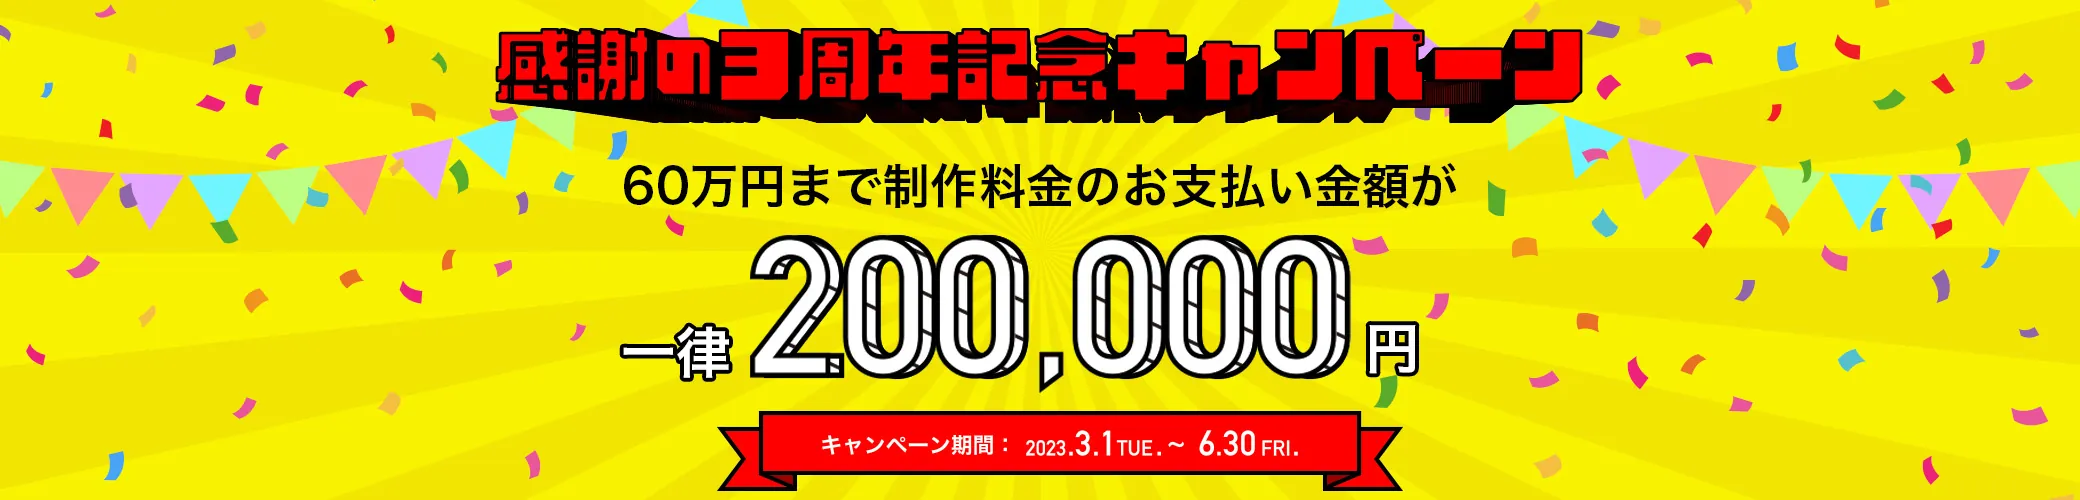 感謝の3周年記念キャンペーン。60万円まで制作料金のお支払い金額が一律20万円。キャンペーン期間は2023年3月1日から6月30日まで。